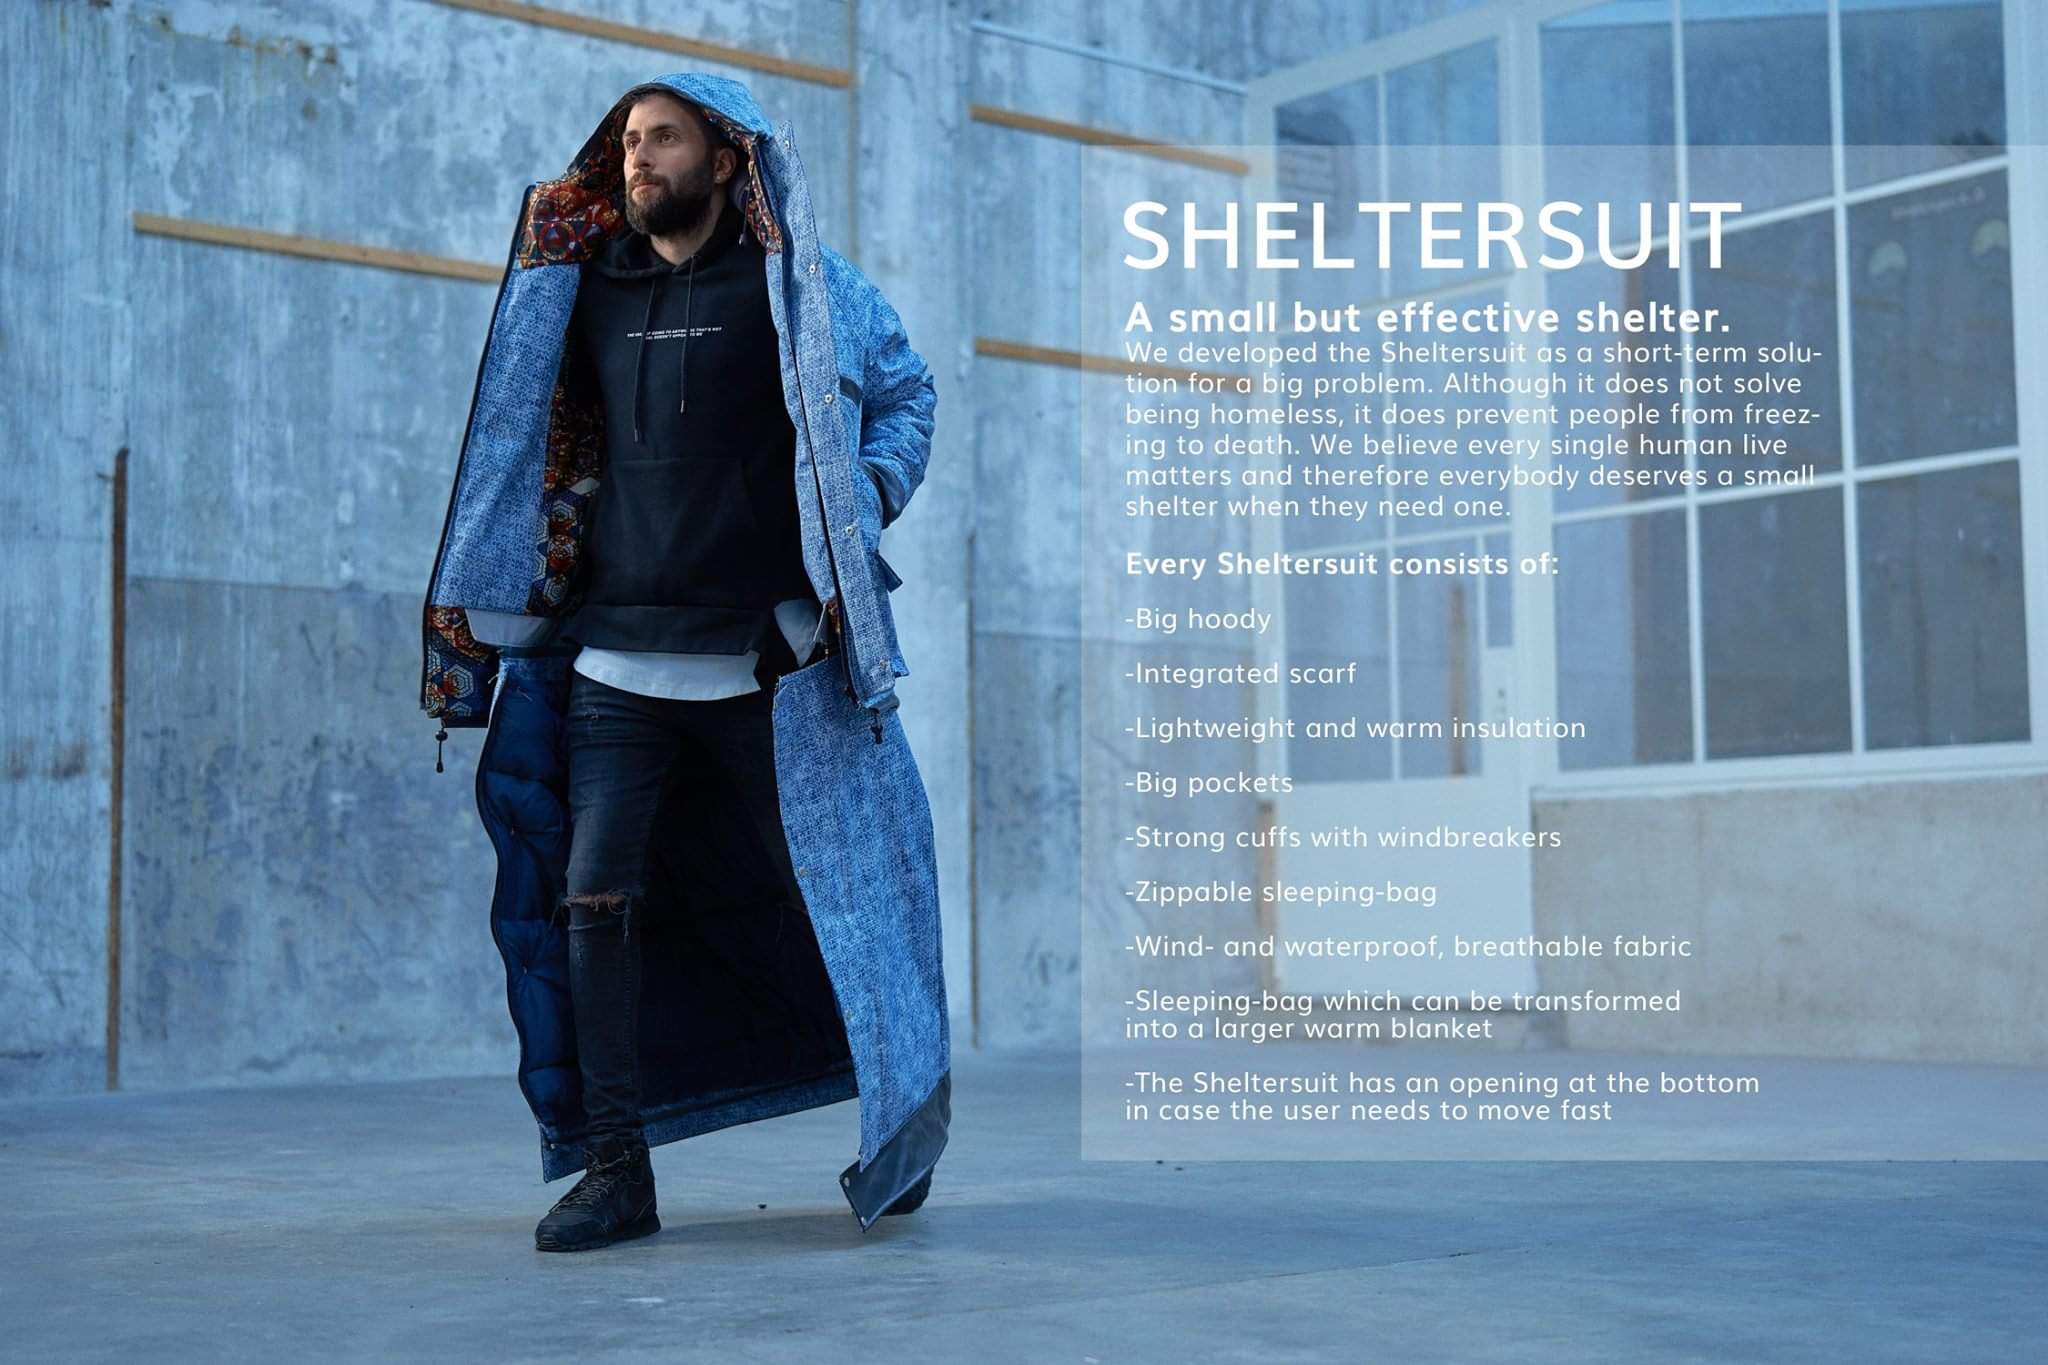 El Consejo Alemán de Diseño seleccionó oficialmente a Sheltersuit como ganador del Premio Alemán de Diseño 2018. El Sheltersuit es un abrigo impermeable y con cortaviento de alta calidad, combinado con un saco de dormir con cremallera, que proporciona protección y calor en cualquier tipo de clima.